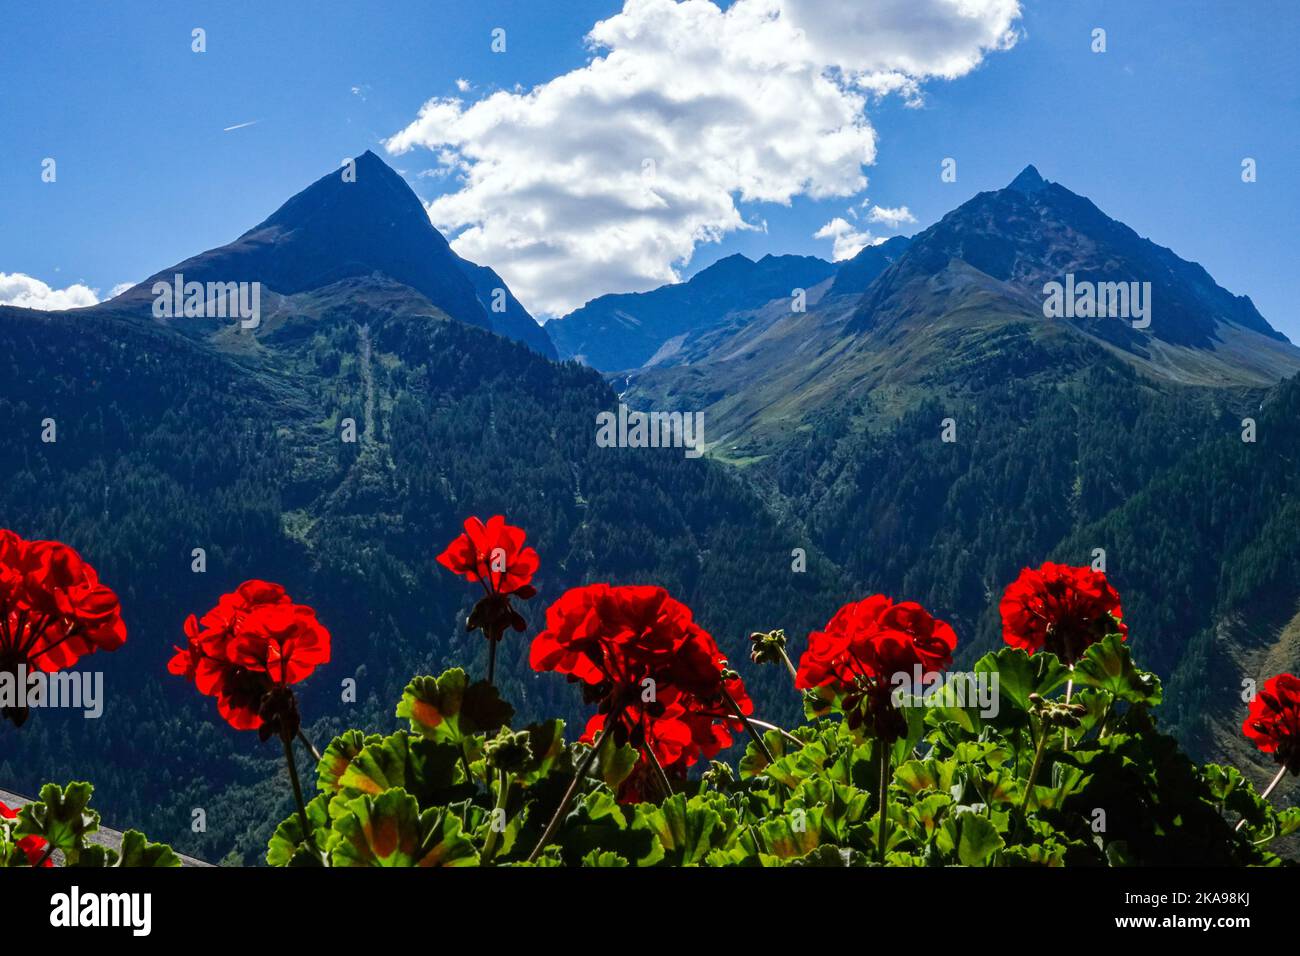 Geranios rojos en la caja de la ventana y picos alpinos, otoño en el valle de Oetztal Austria, Tirol, Alpes, Foto de stock